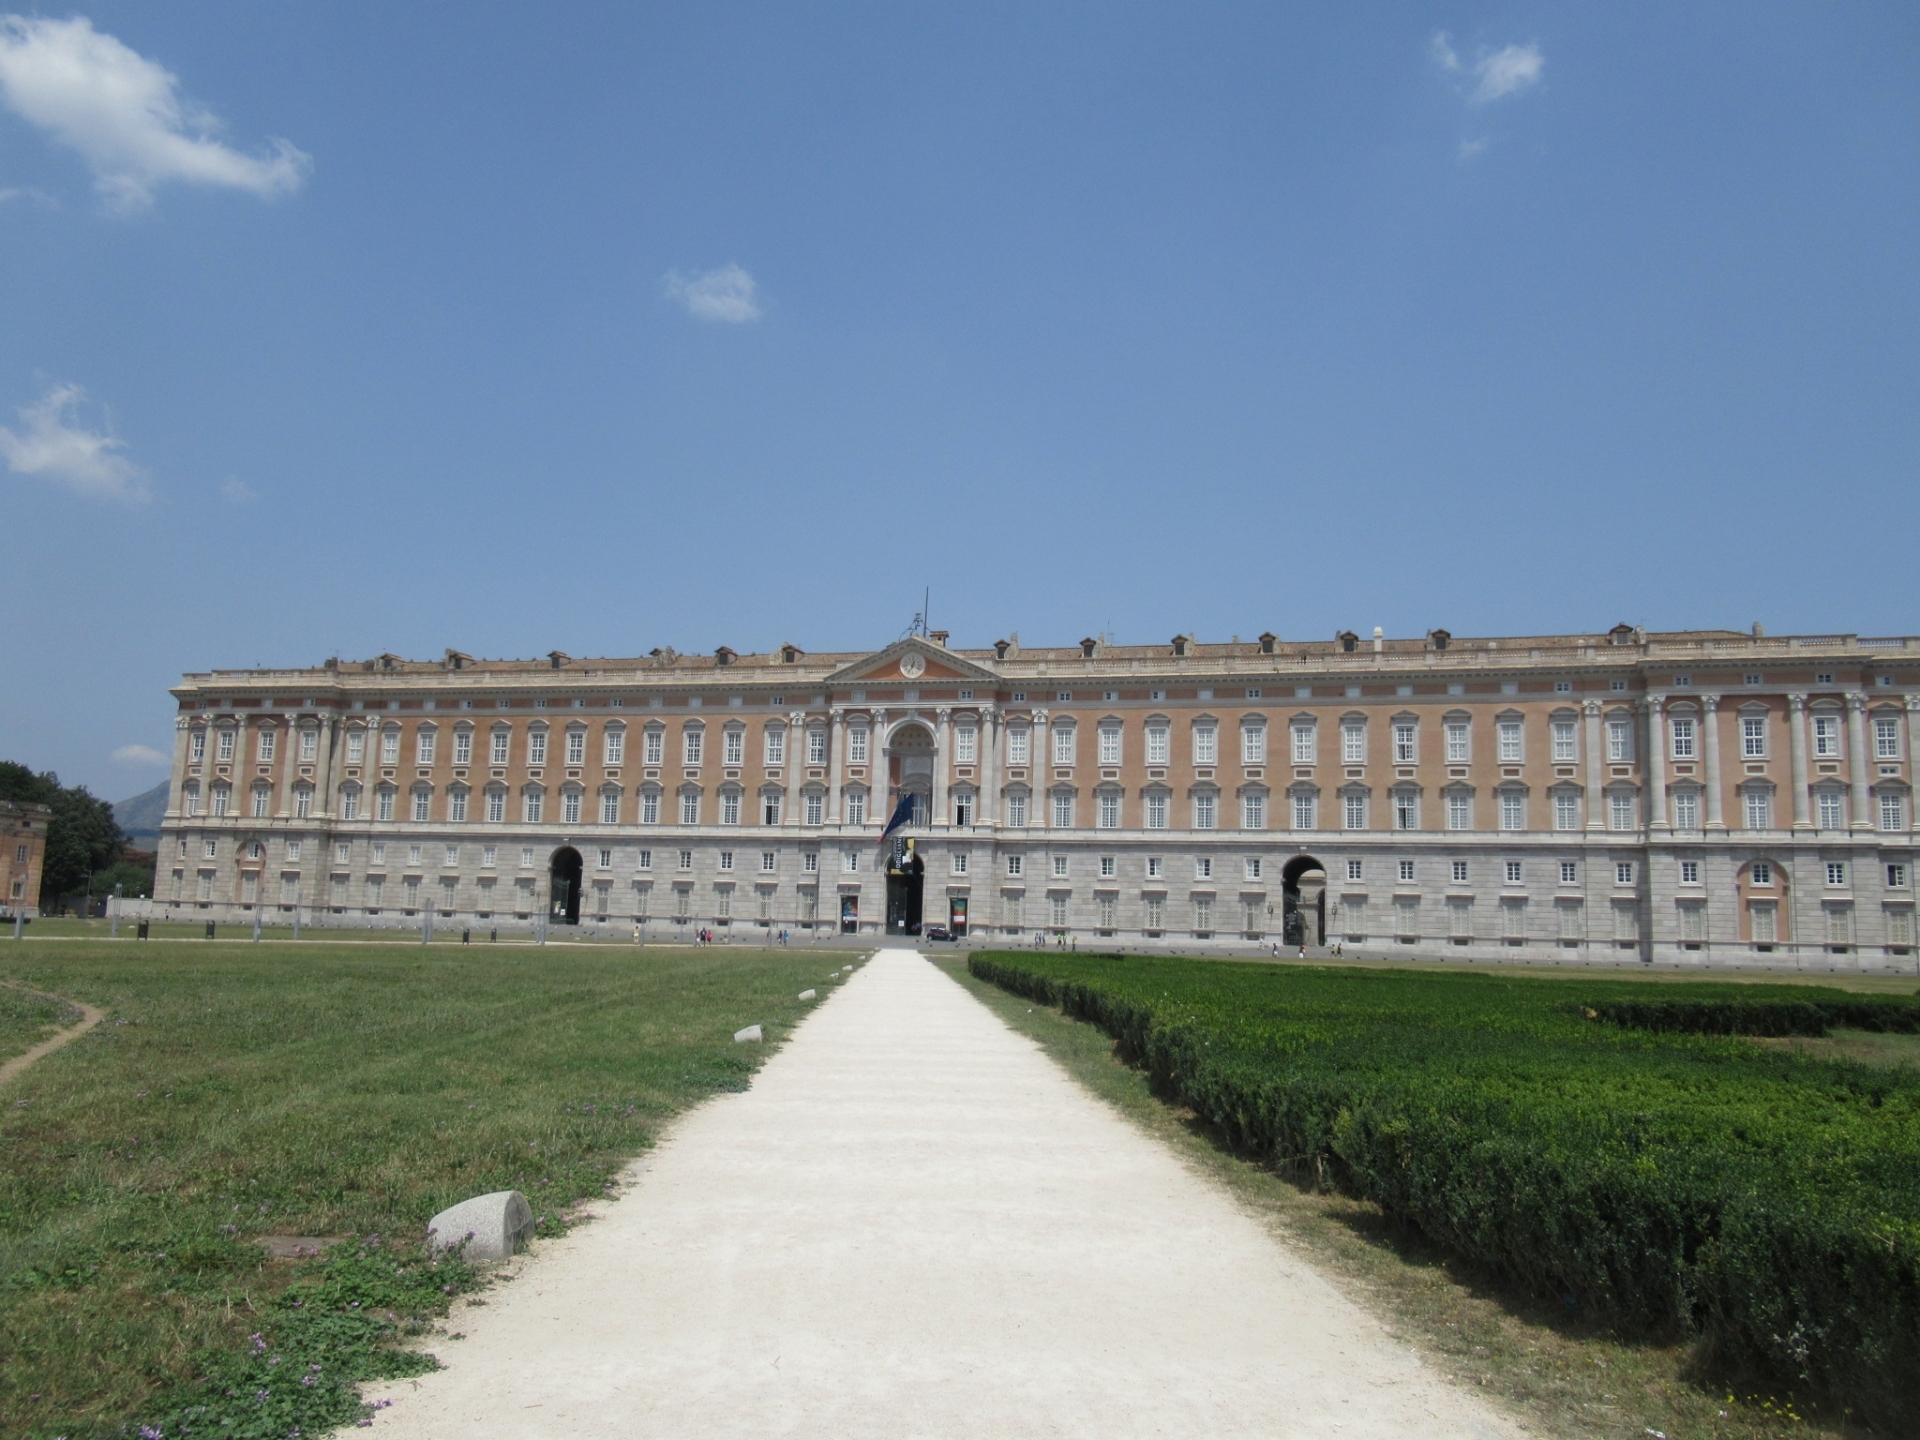 カゼルタの18世紀の王宮と庭園、ヴァンヴィテッリの水道橋、サン・レウチョの関連遺産